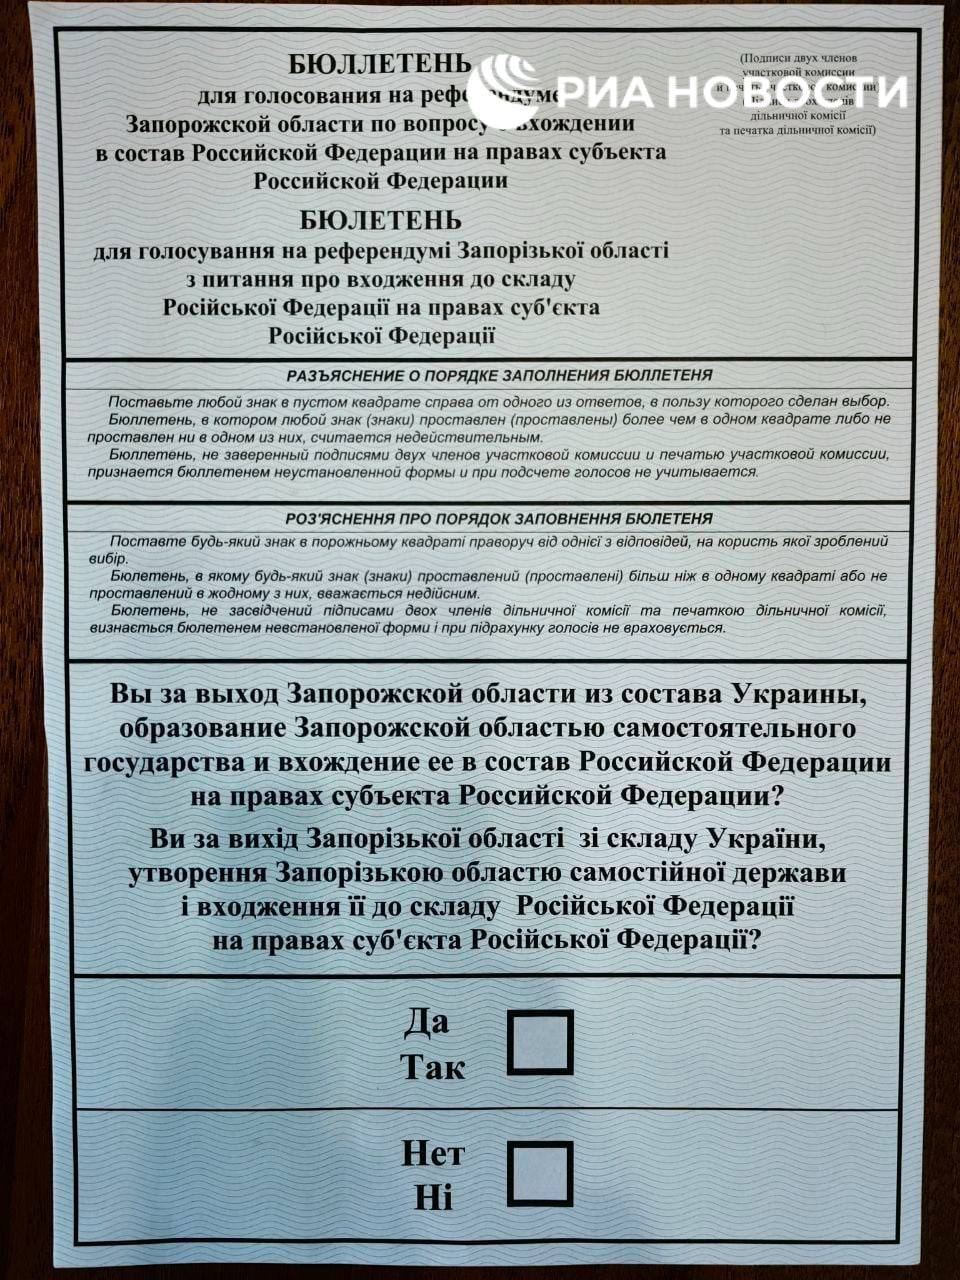 Появилось фото бюллетеня для псевдореферендума на части временно оккупированной Запорожской области